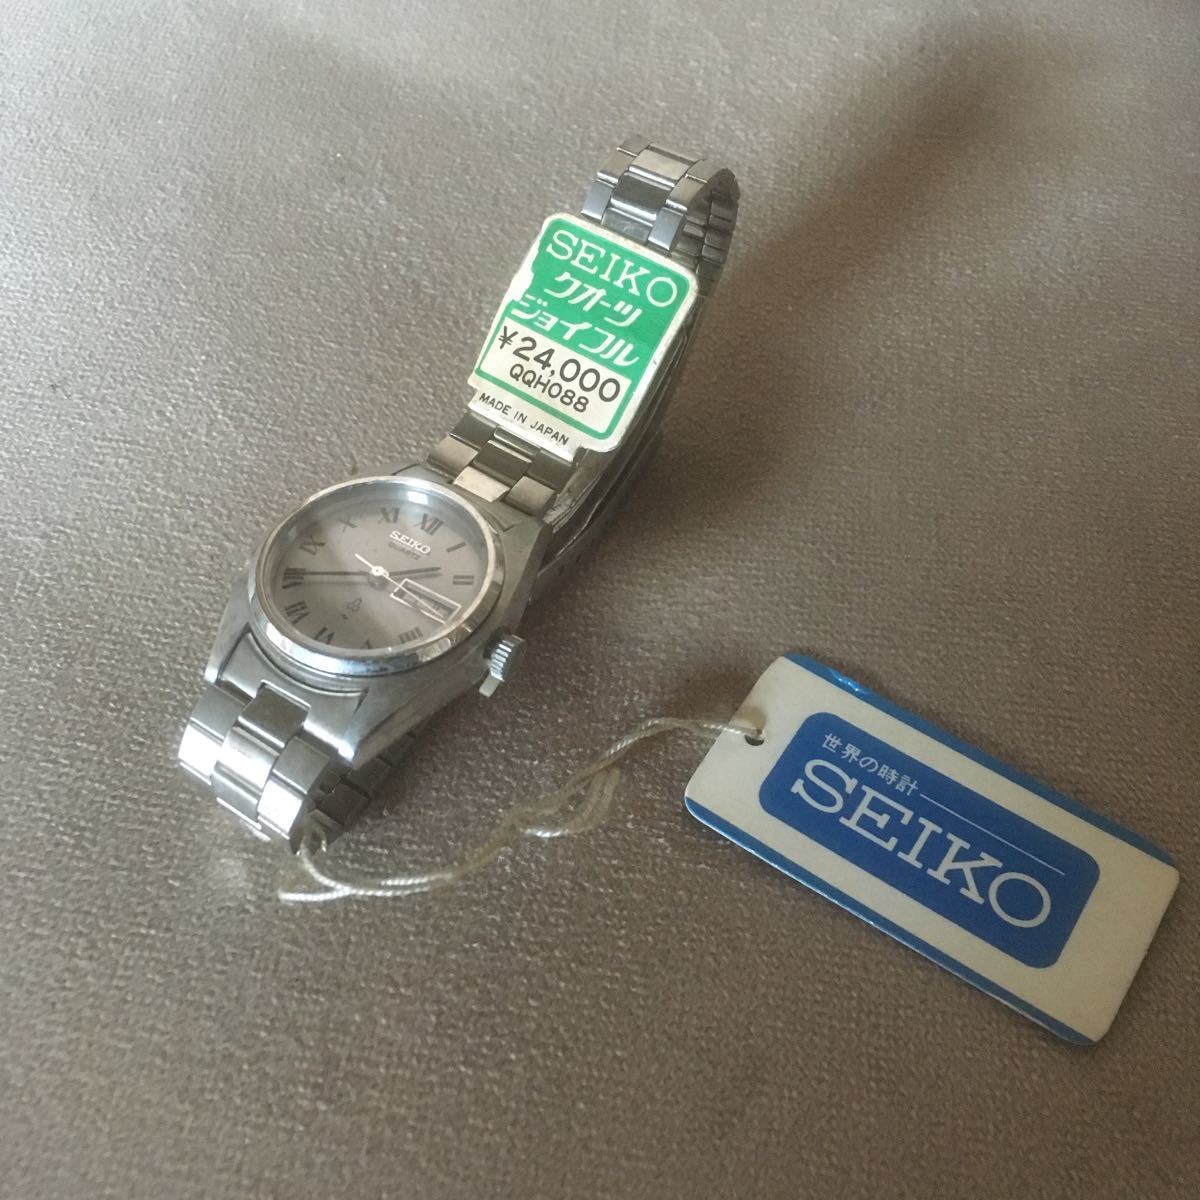 K13 SEIKO セイコー ジョイフル クォーツ 腕時計 2623-0150 デッドストック タグ付き 現状ジャンク品